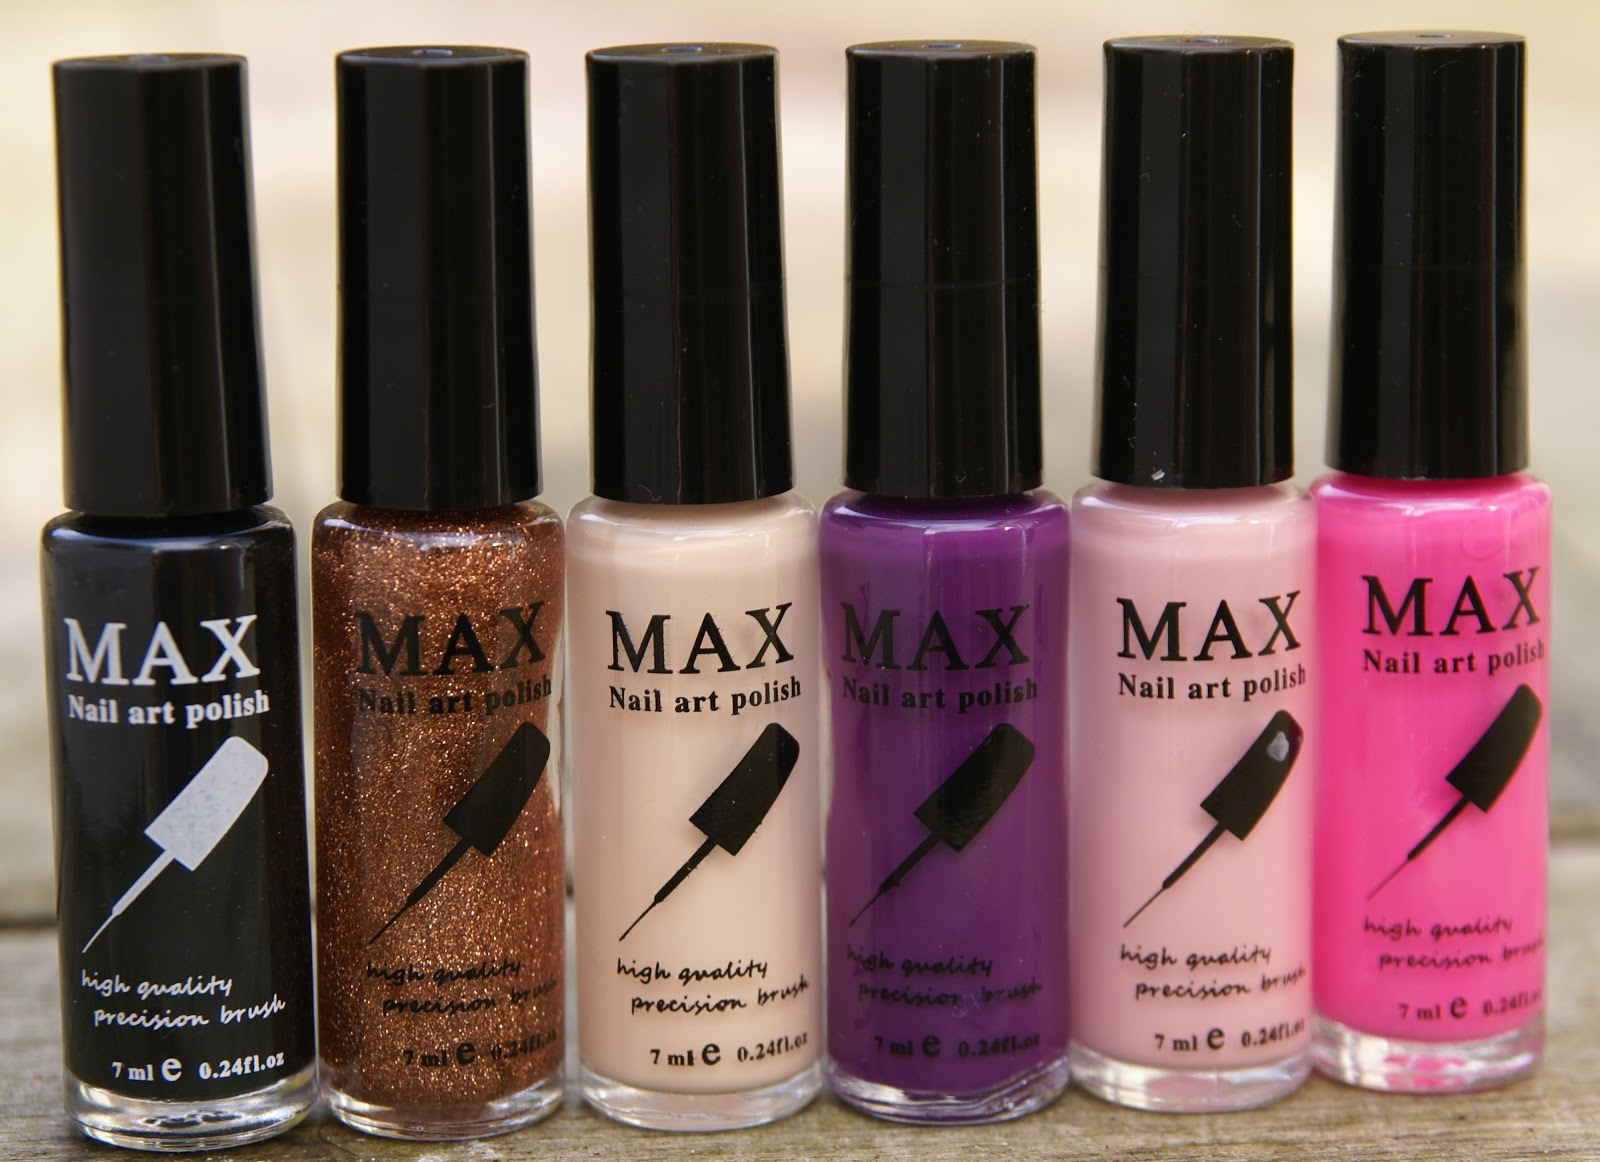 2. Maxus Nails - Nail Art Iron Max - wide 3